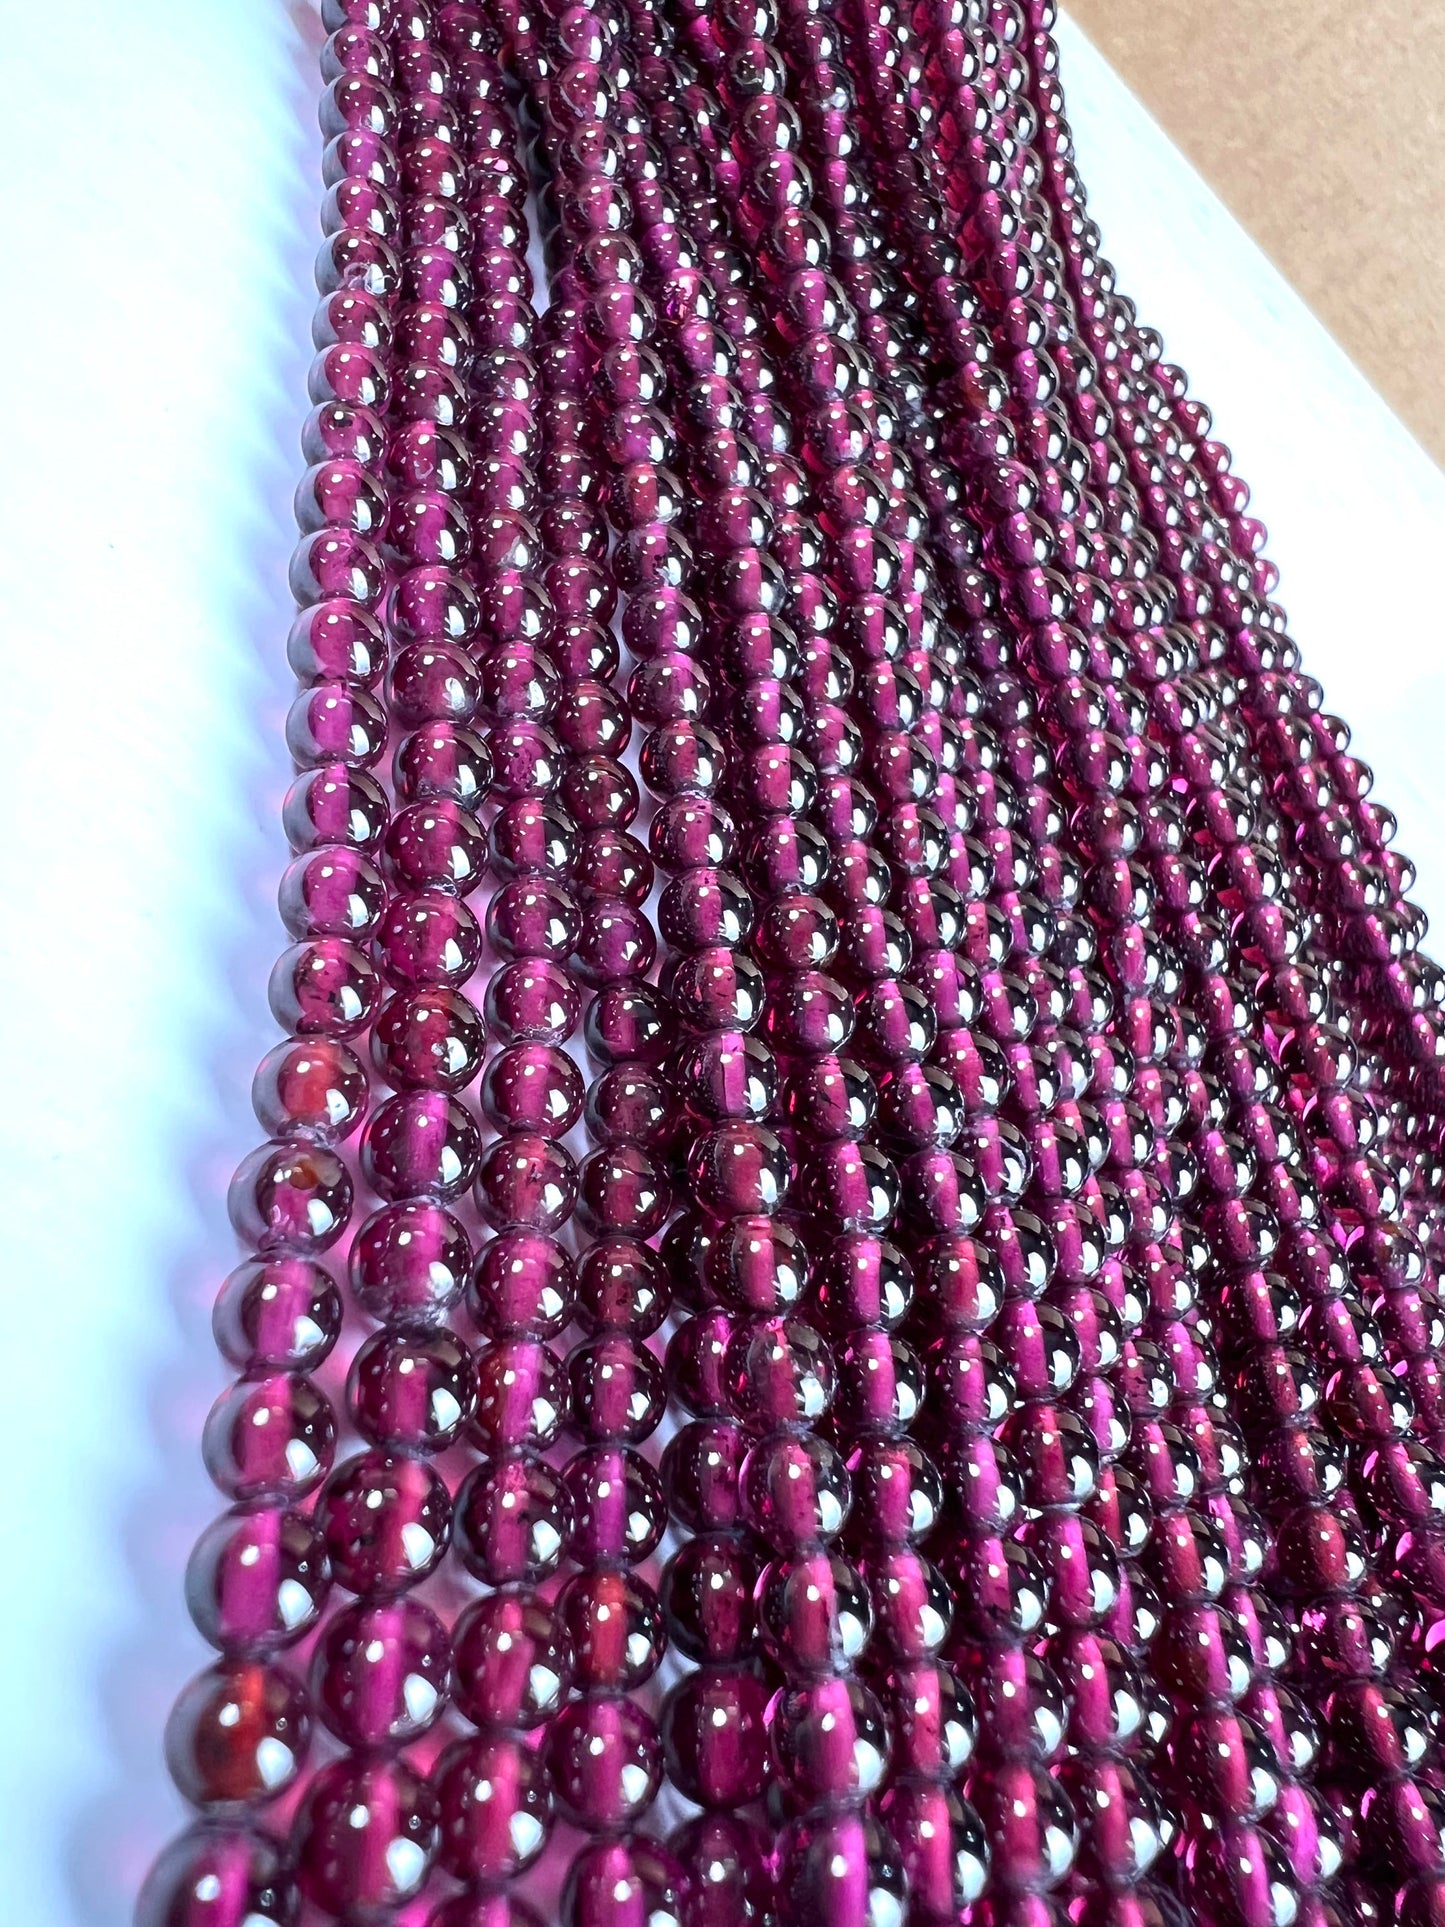 4mm Garnet smooth round beads ,Merlot red AAA quality Jewelry Making Gemstone Beads, Rare, Beautiful Gemstone 13” strand